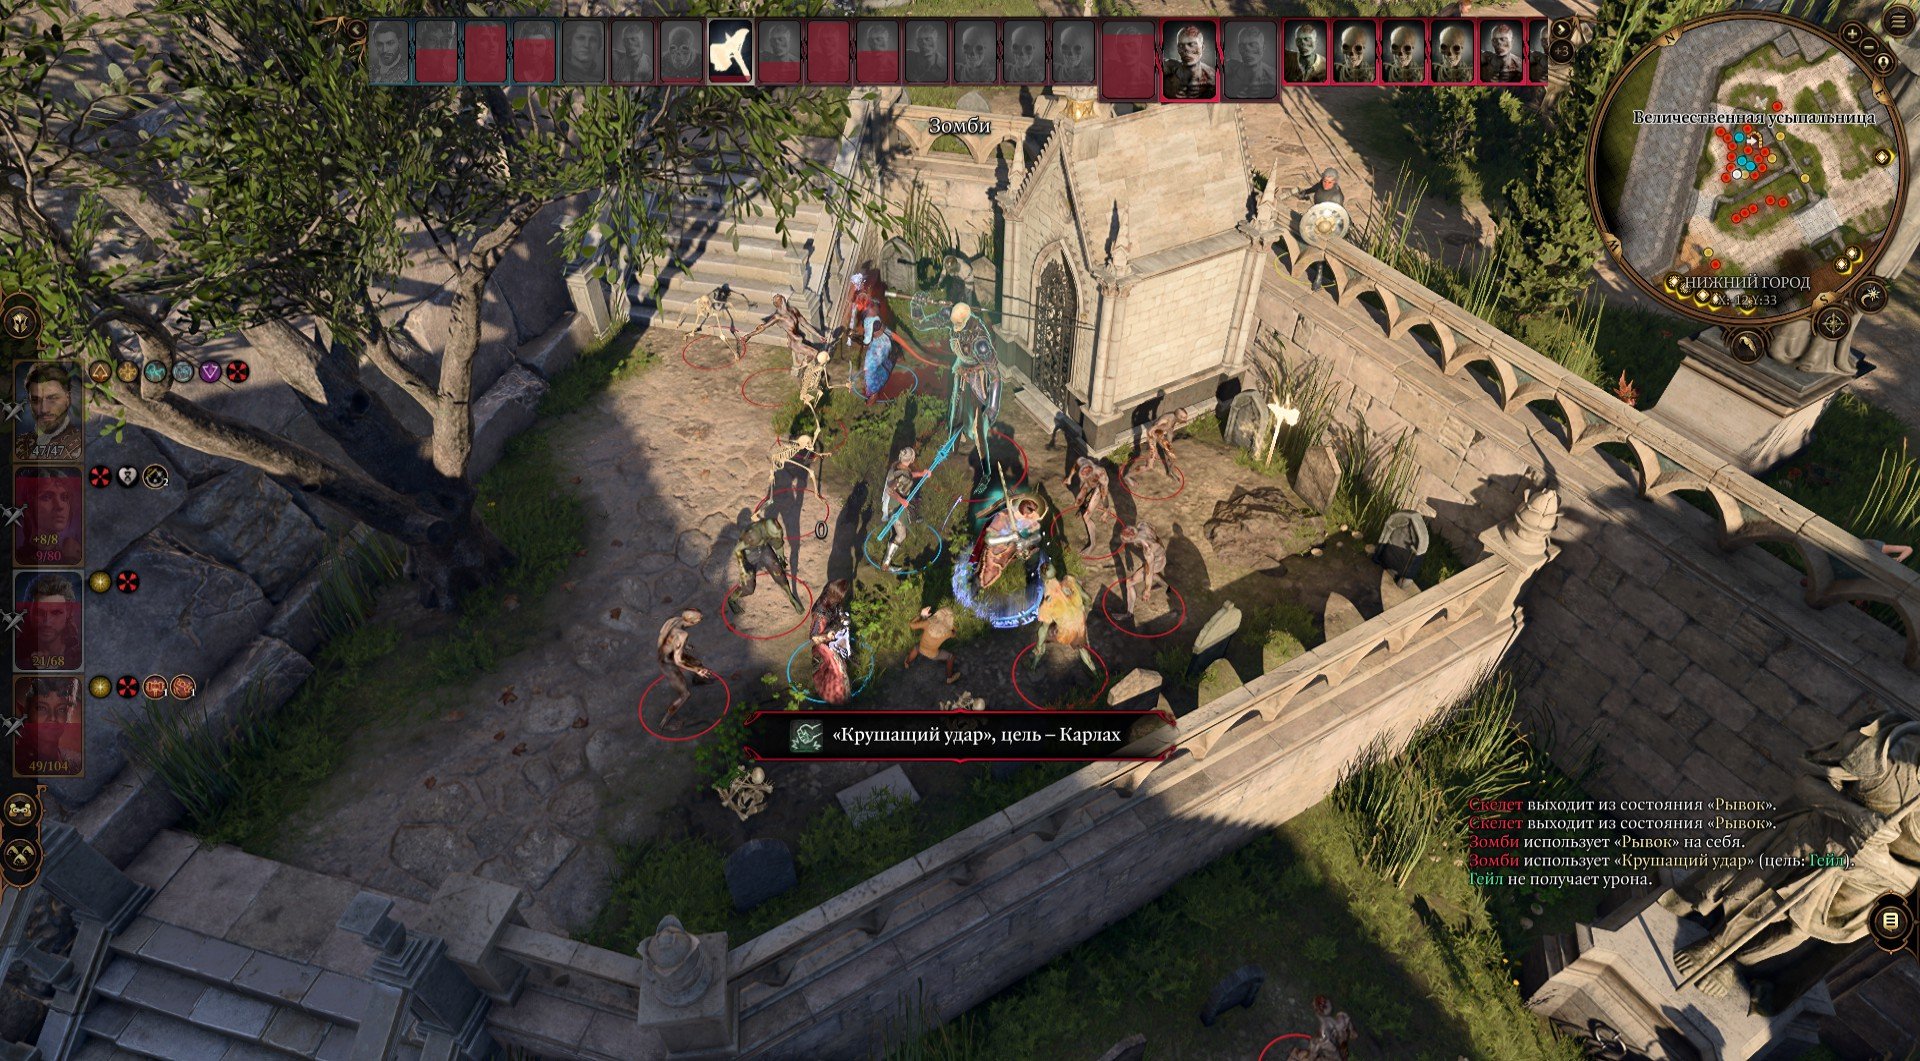 Обзор Baldur's Gate 3. Главный претендент на игру года и лучшую ролевую игру в истории